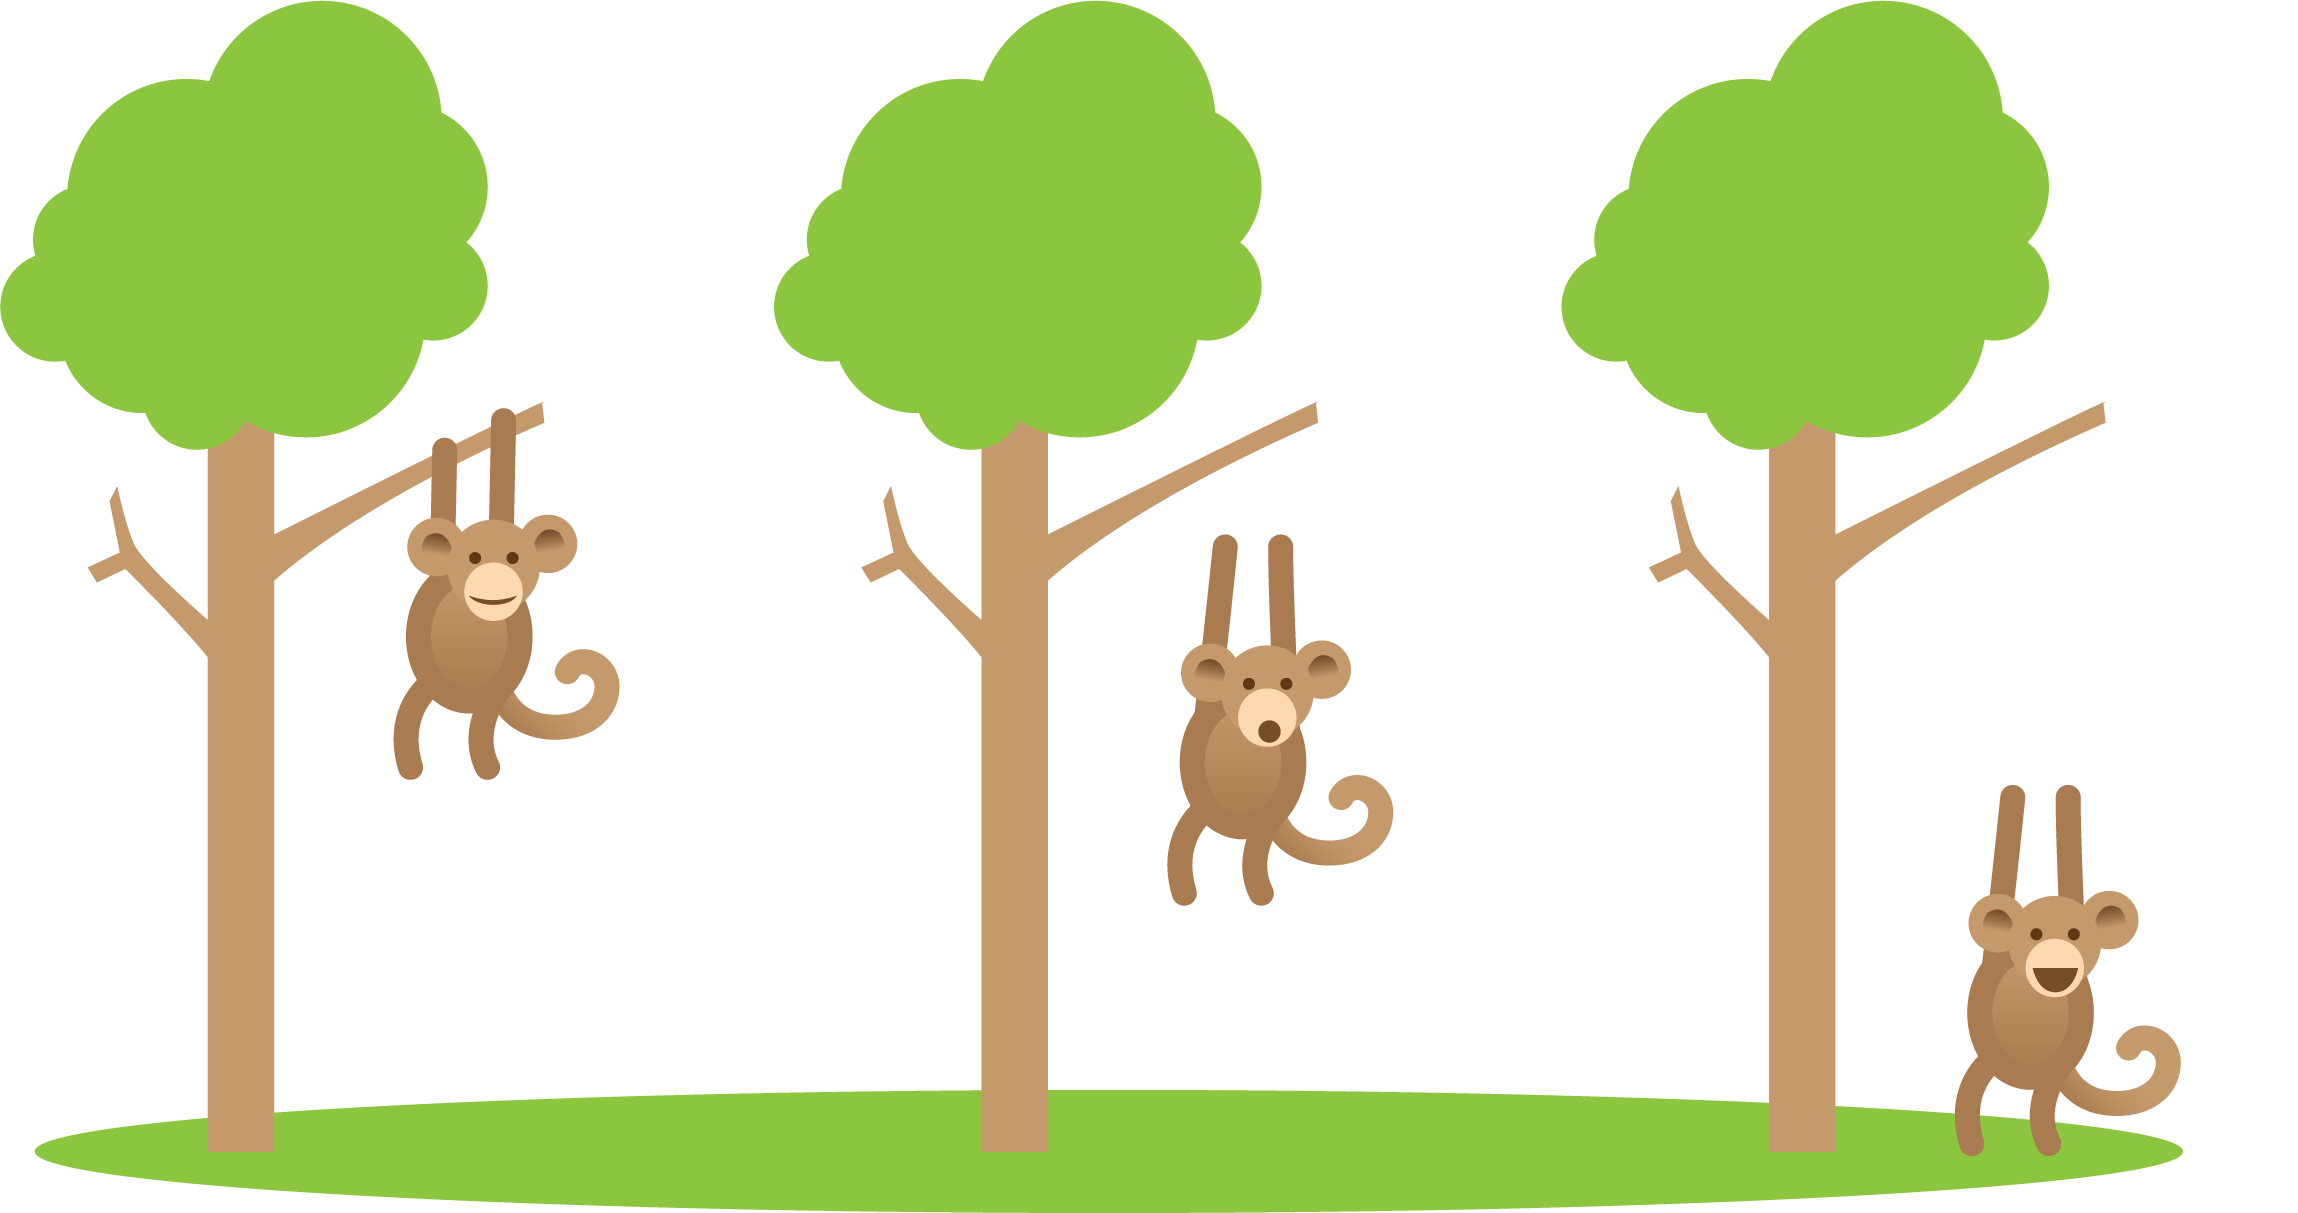 Three trees and monkeys